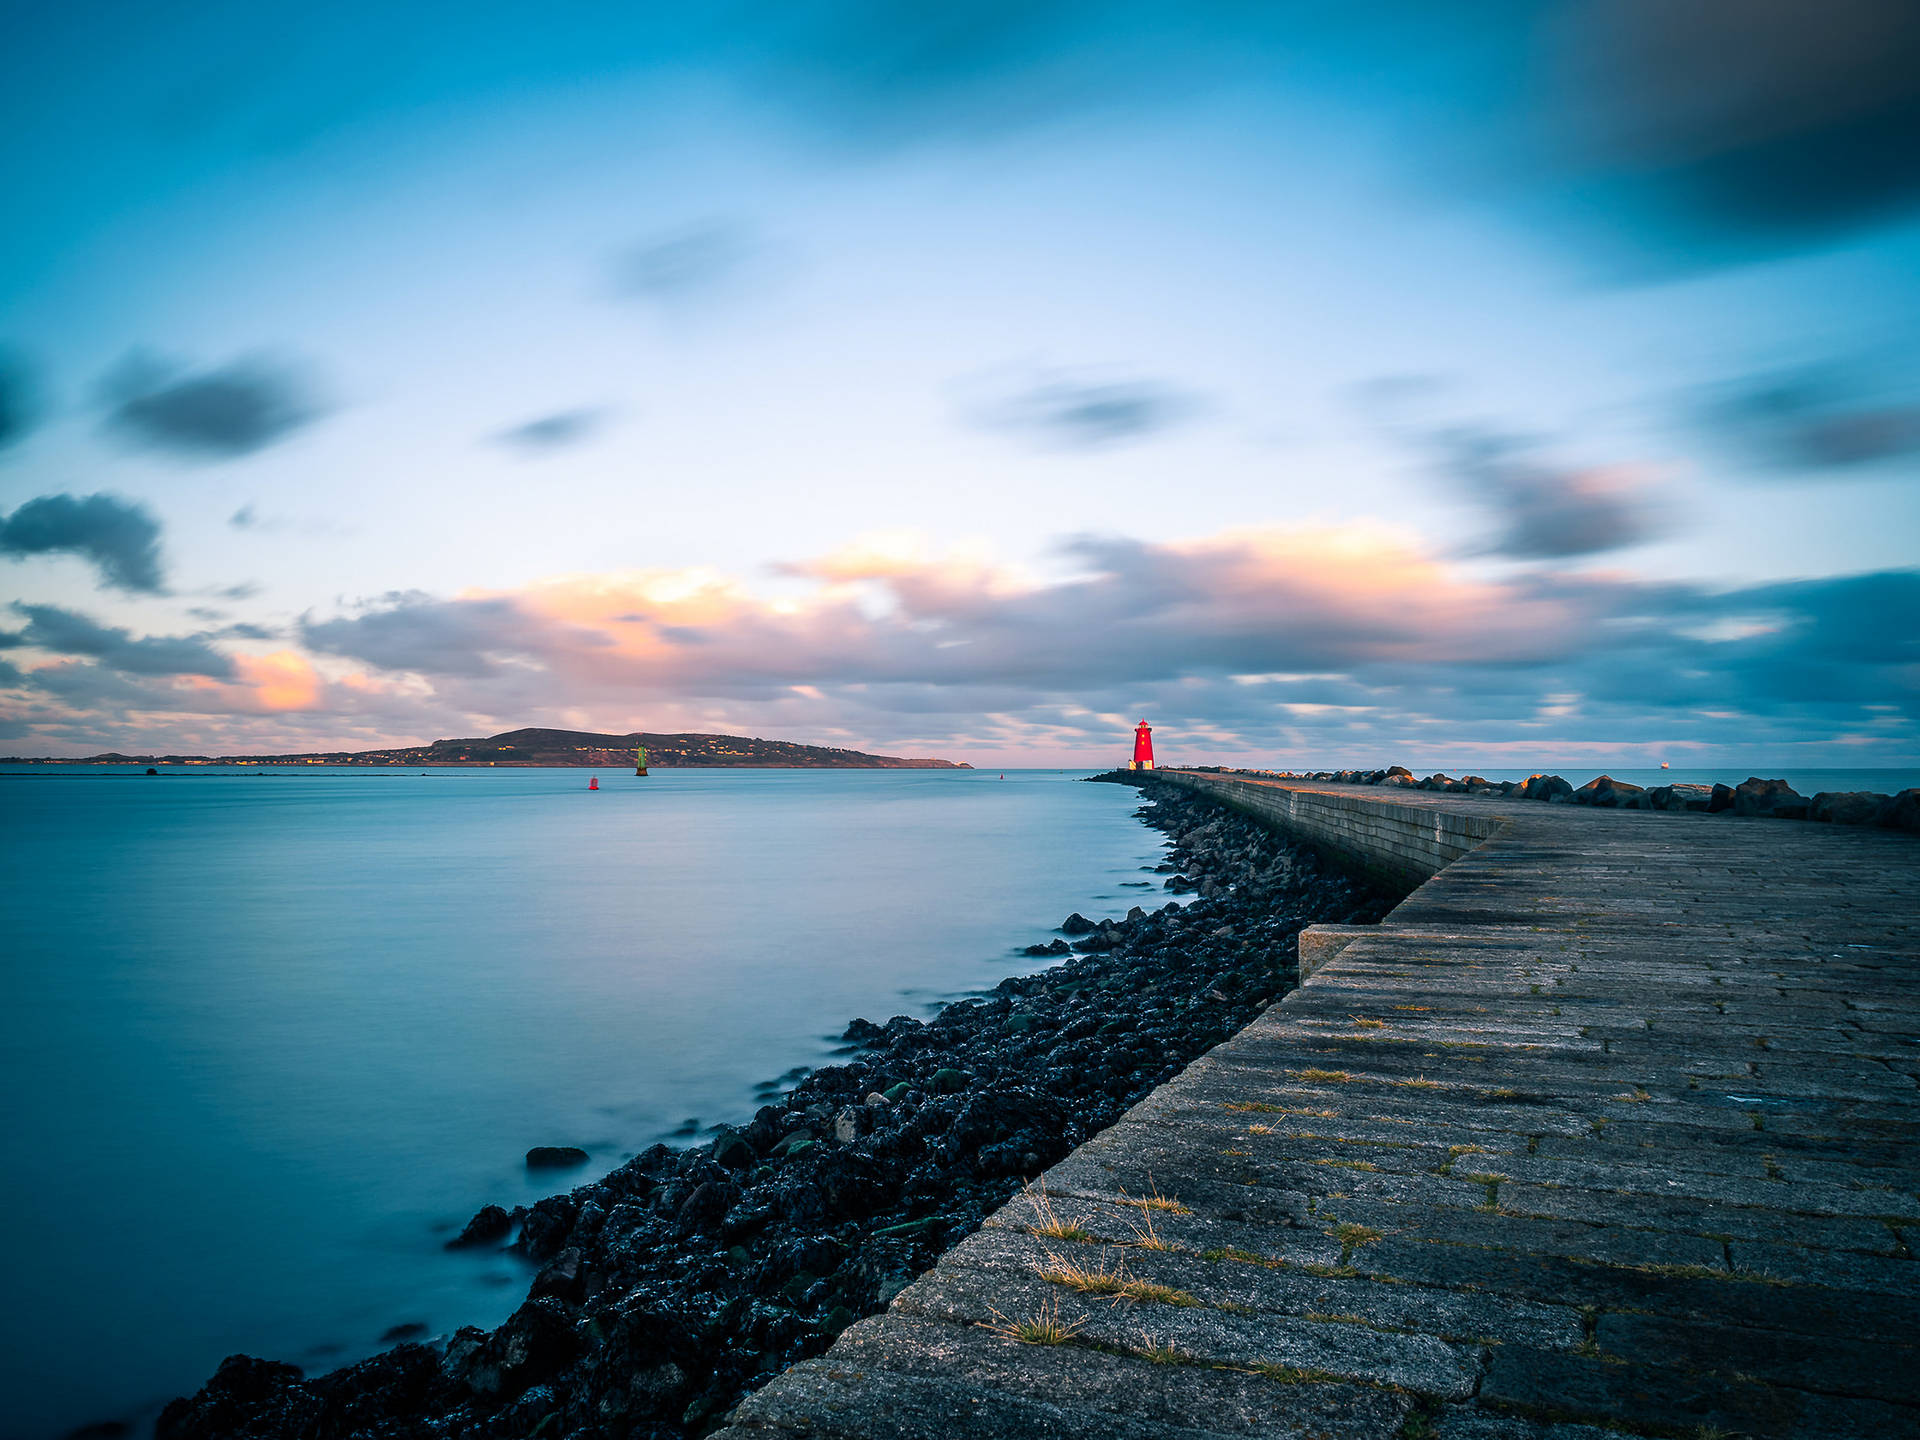 Poolbeg Lighthouse Dublin Ireland Background